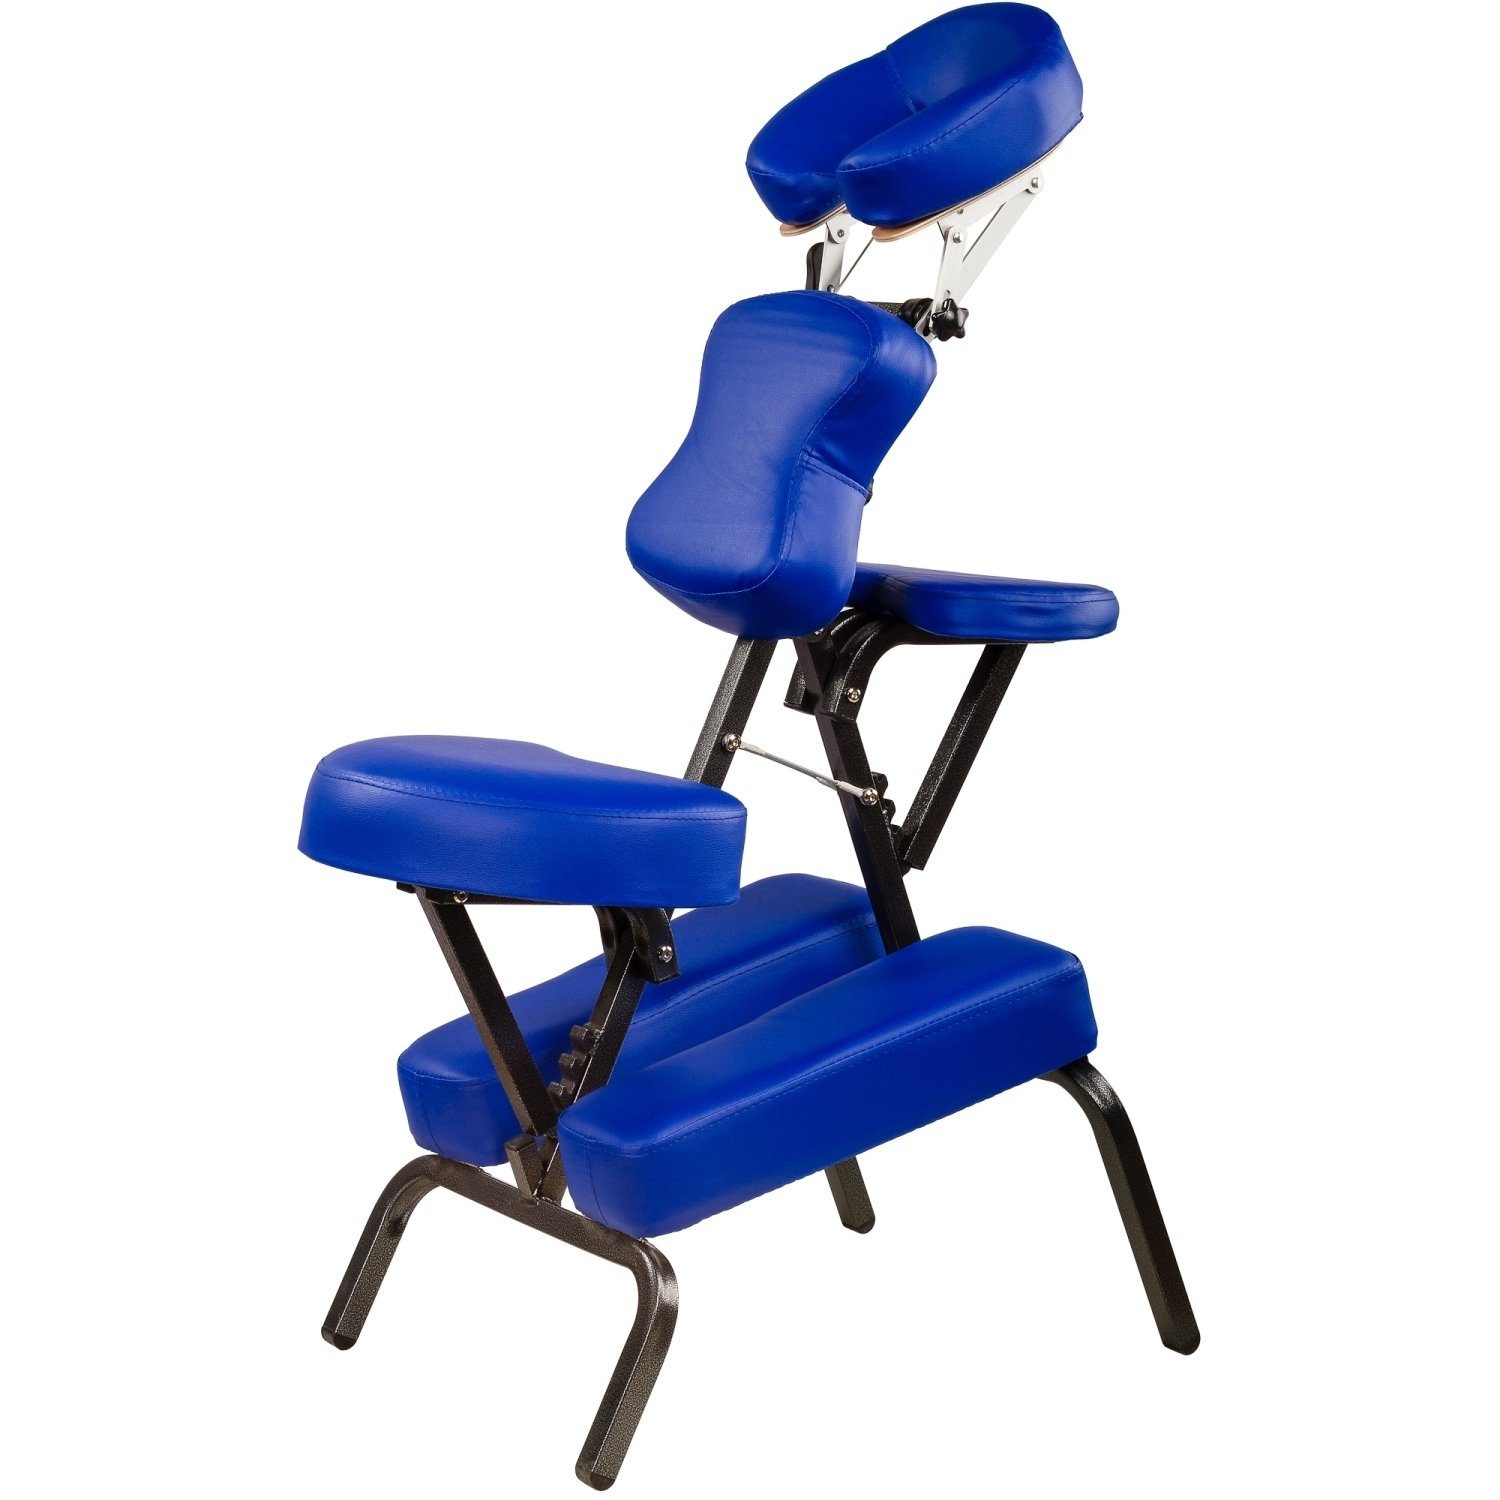 MOVIT Massagesessel Movit® Klappbarer Massagestuhl/Tattoo Stuhl, inkl. Tasche, belastbar bis 200 kg, Farbwahl, schadstoffgeprüft Blau